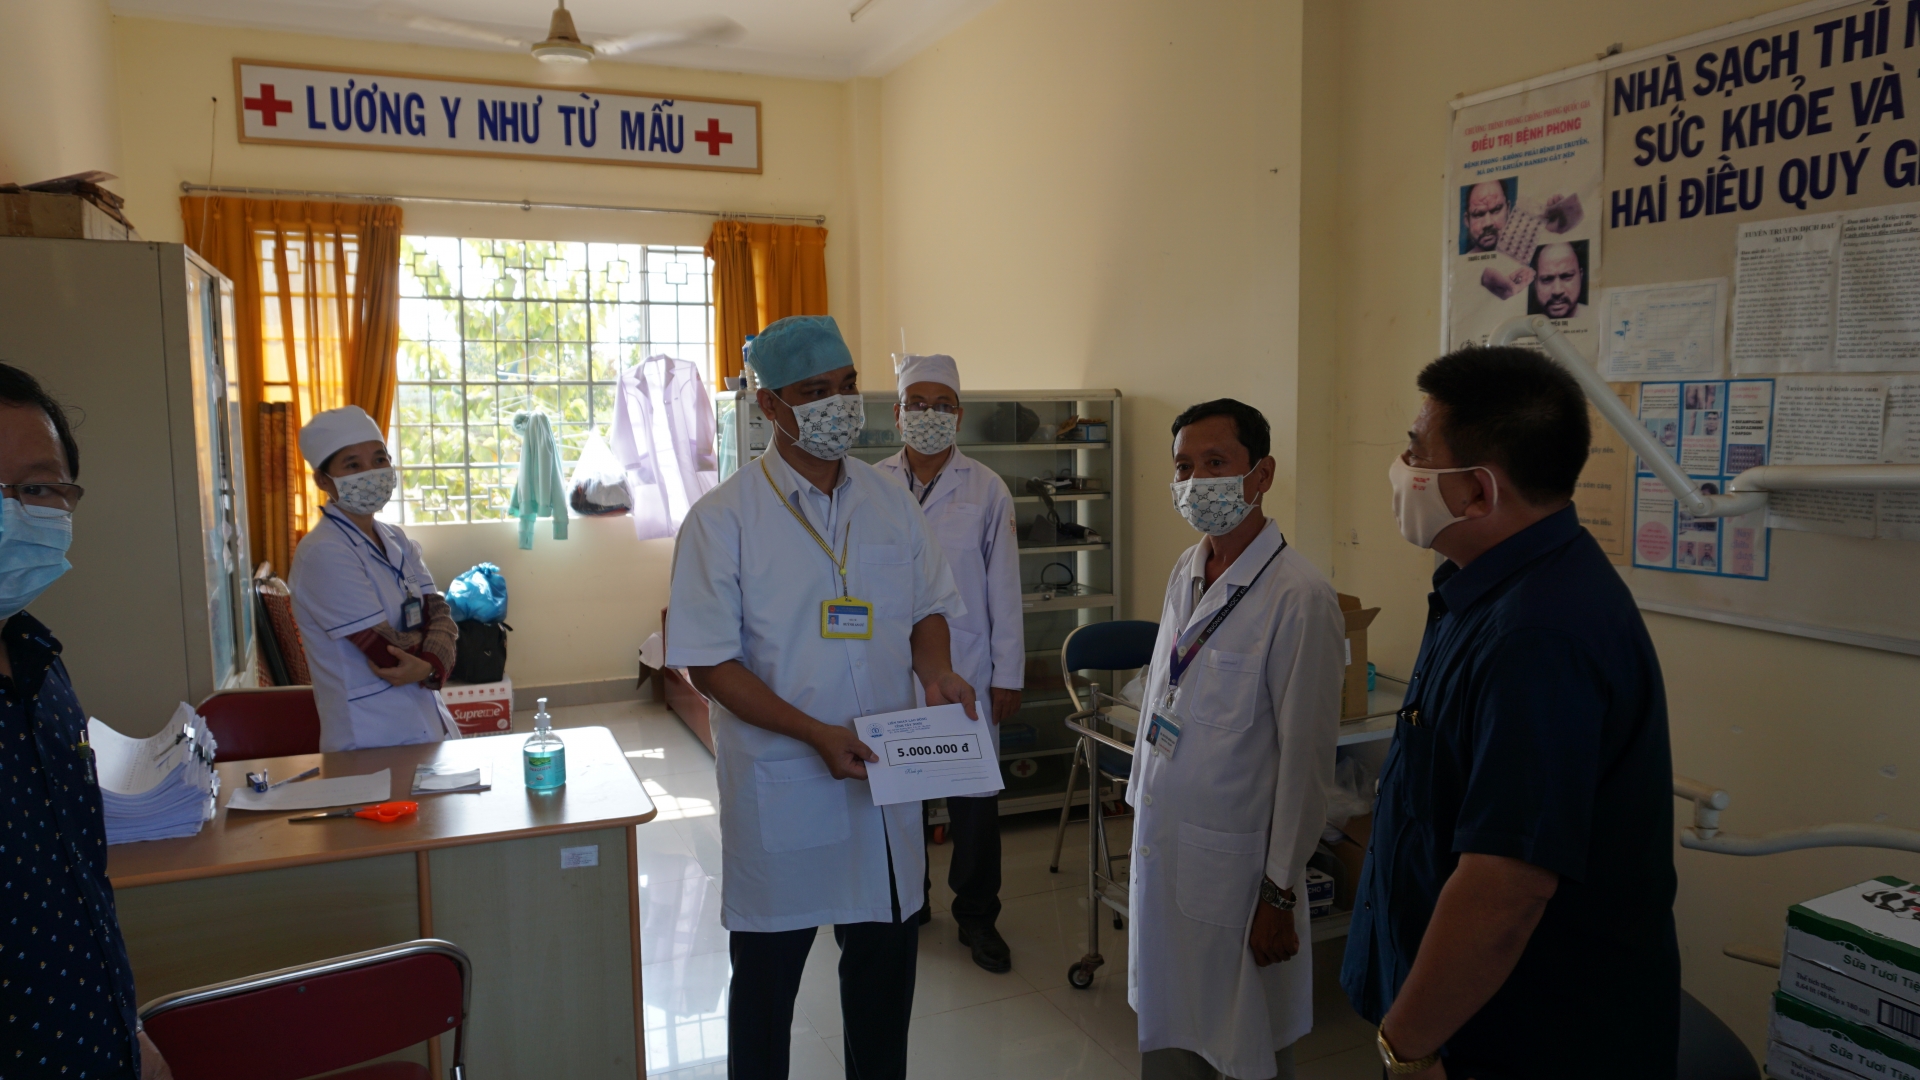 LĐLĐ Tây Ninh đẩy mạnh tuyên truyền phòng chống dịch bệnh Covid -19 tuyến biên giới